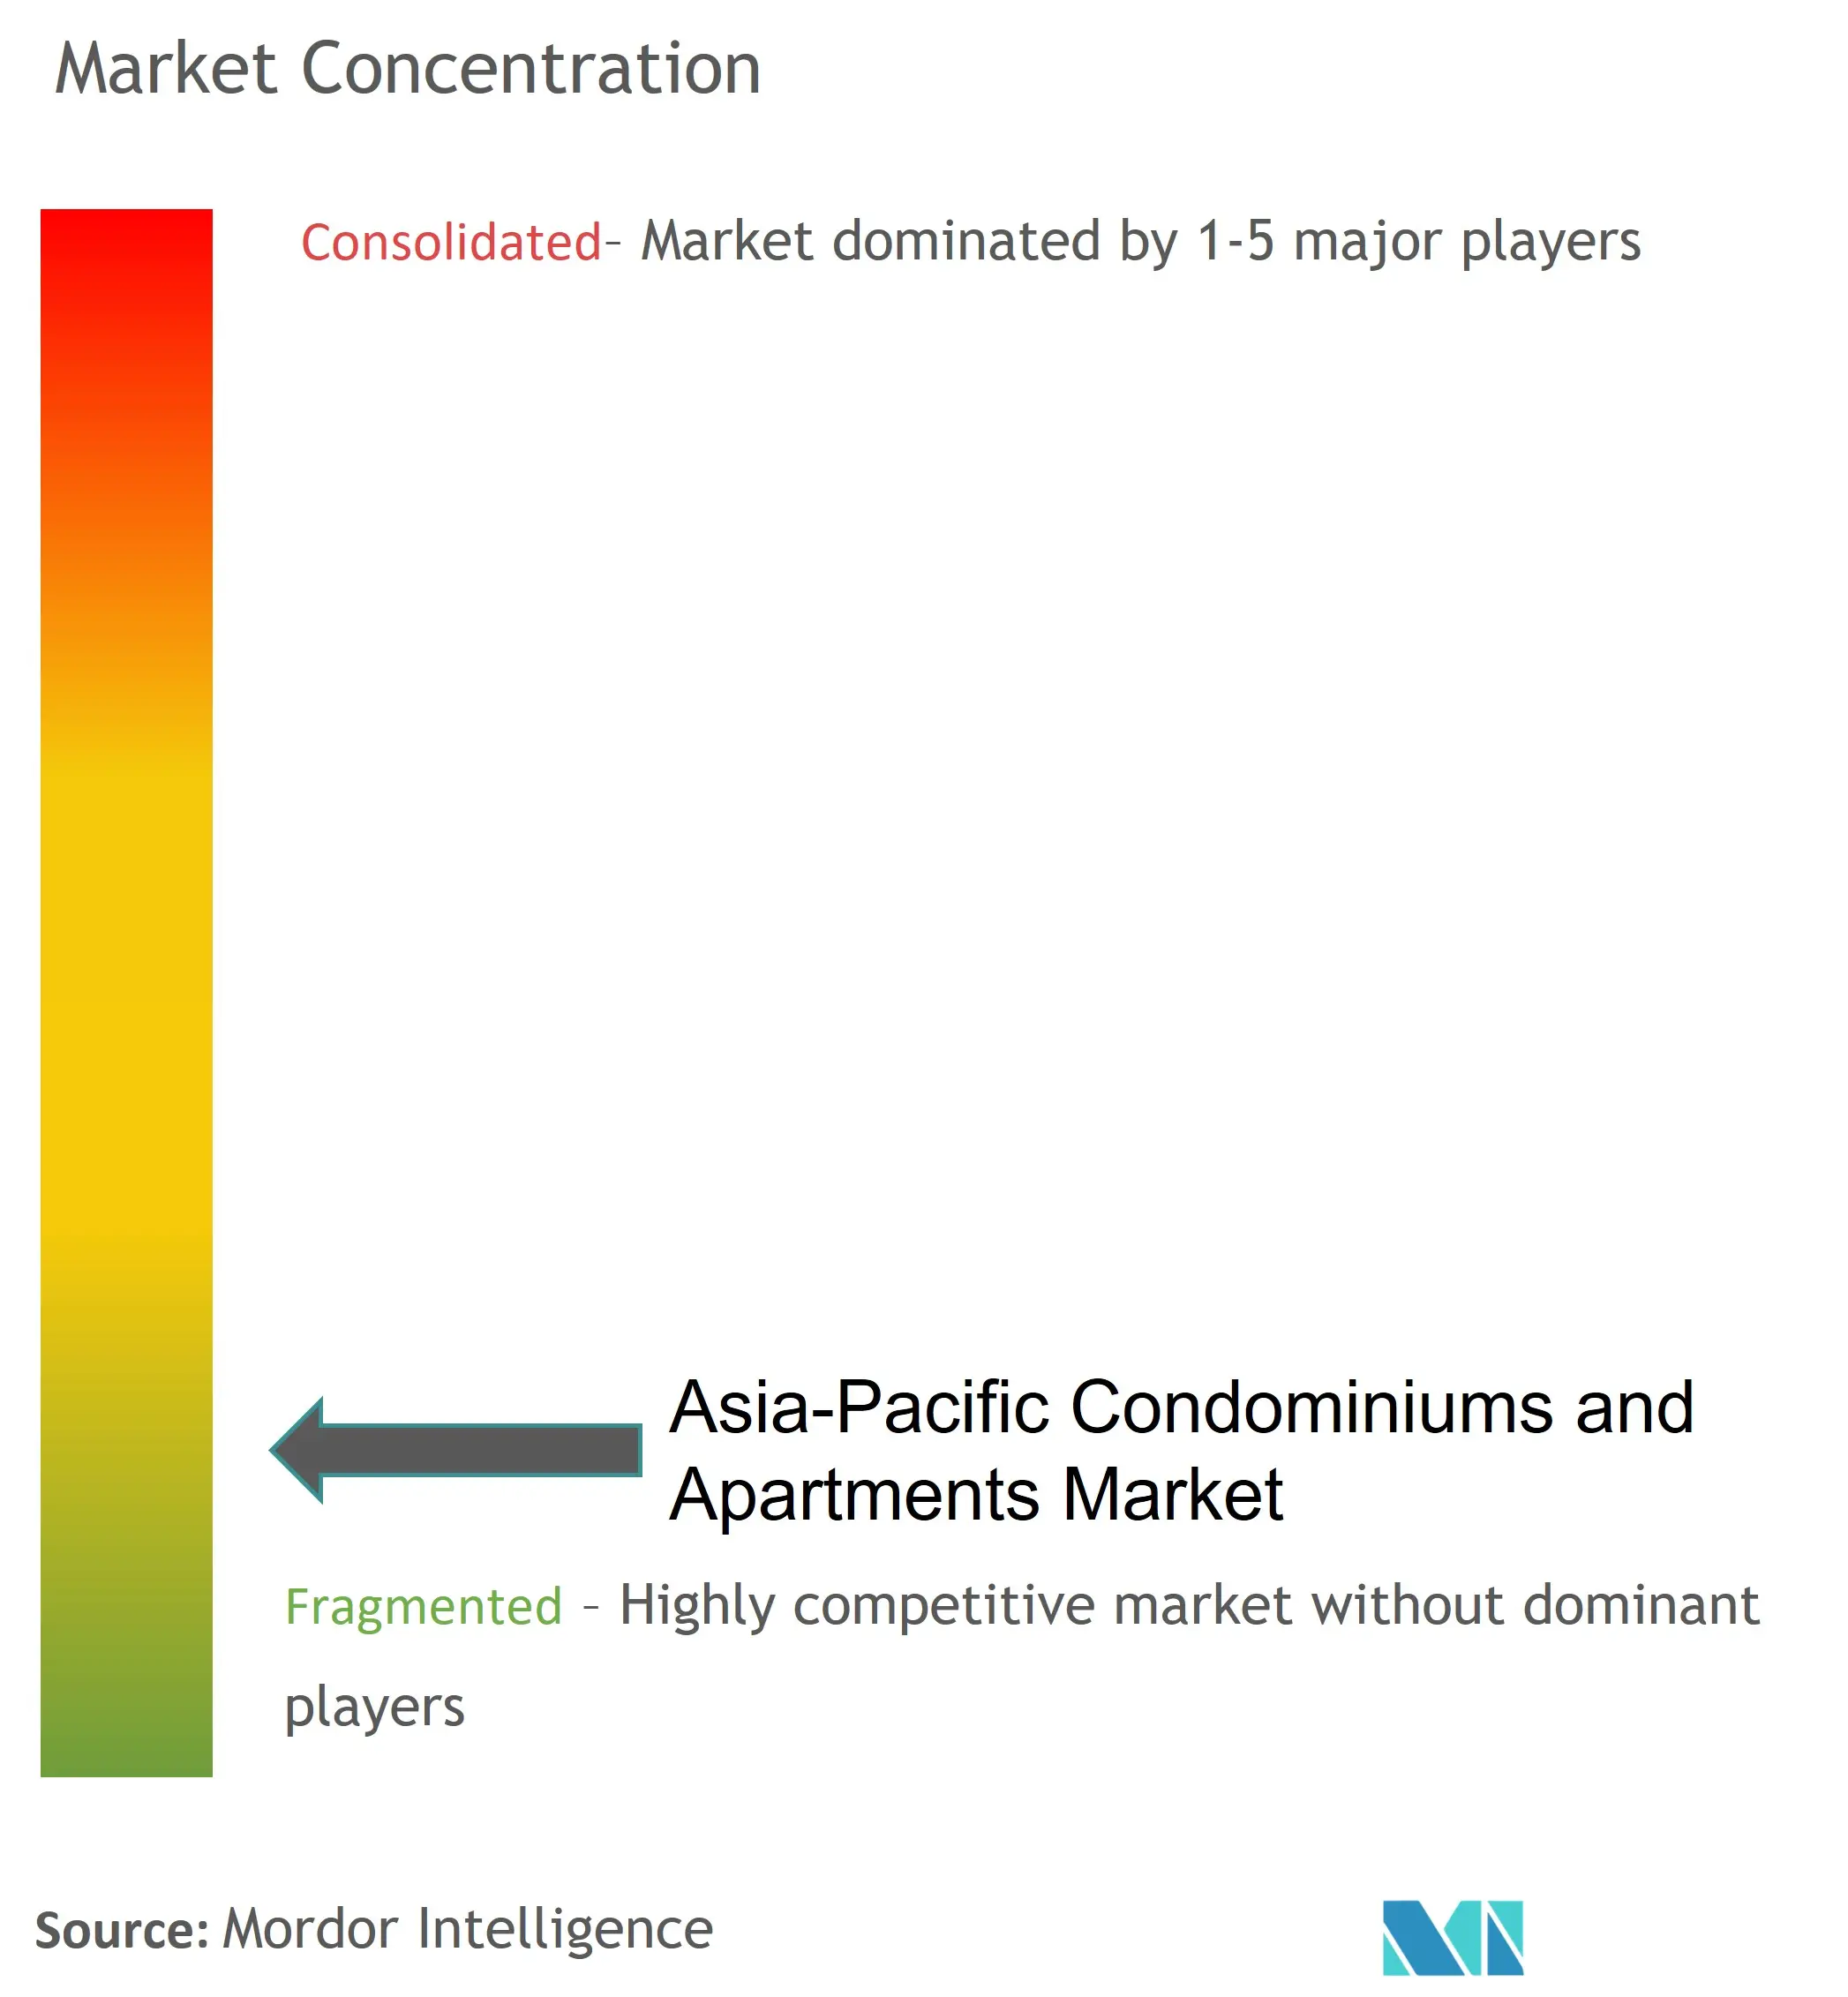 アジア太平洋地域のコンドミニアムとアパート市場の集中度